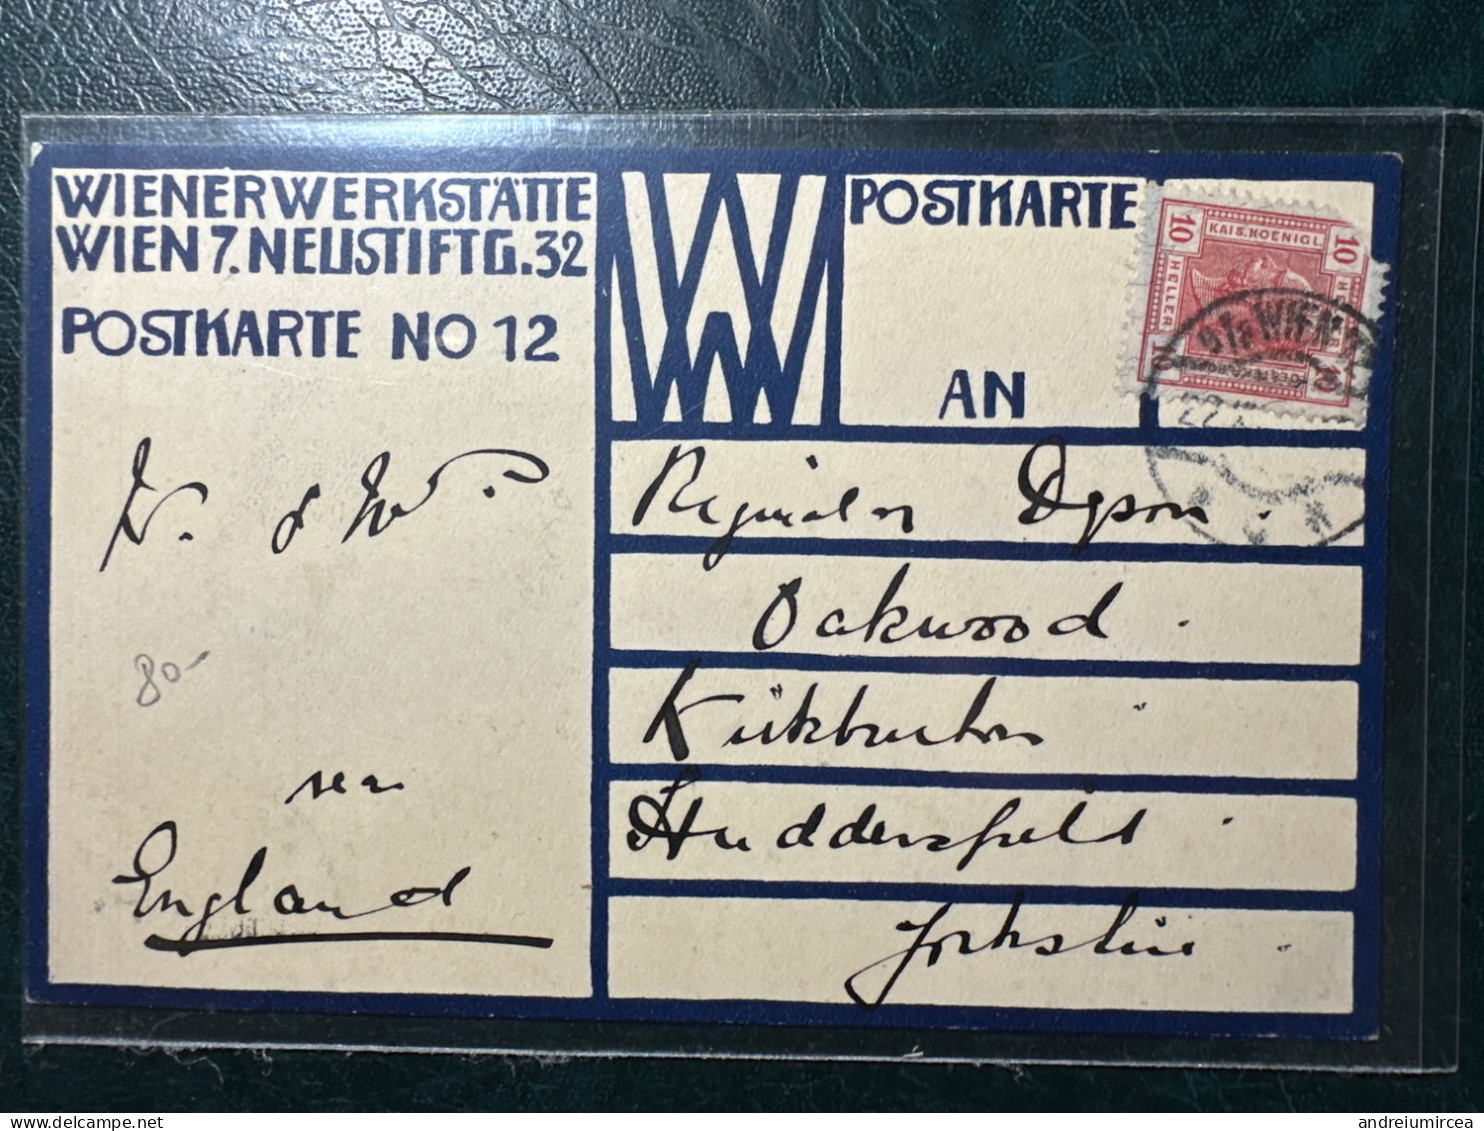 Postkarte No. 12 Sent From Wien To England - Wiener Werkstaetten